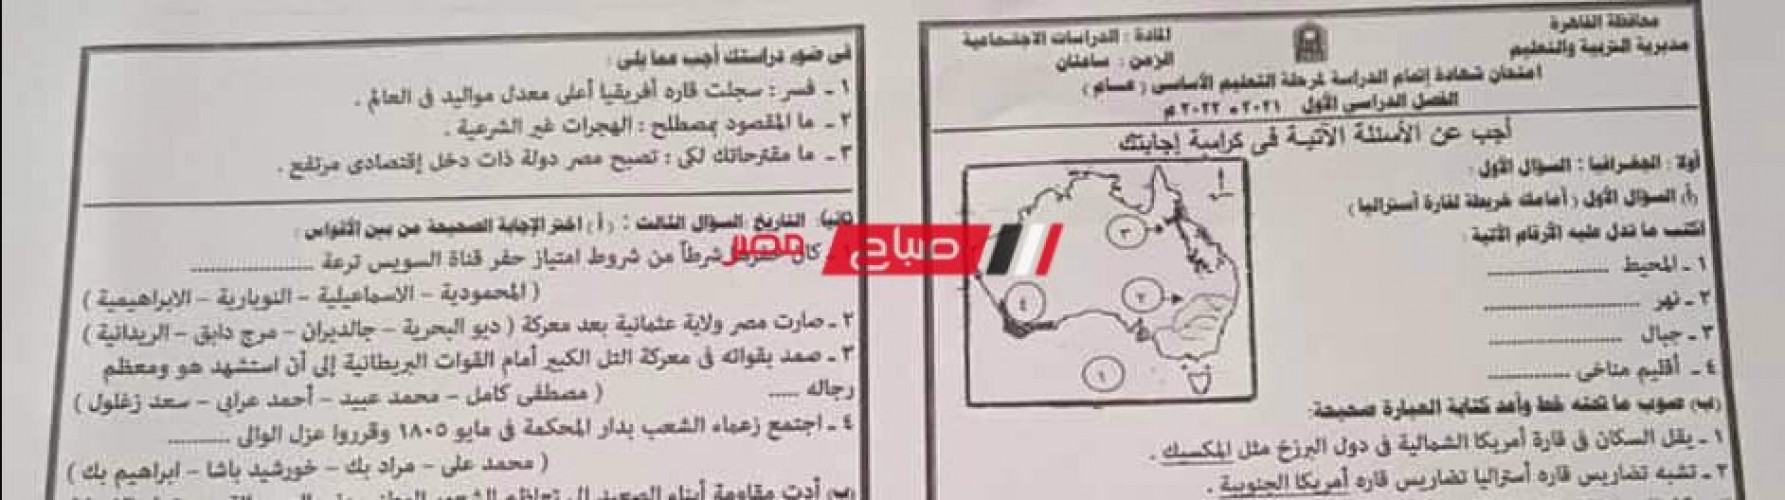 امتحان الدراسات الاجتماعية محافظة القاهرة الصف الثالث الاعدادي بعد استياء الطلاب بسبب صعوبته